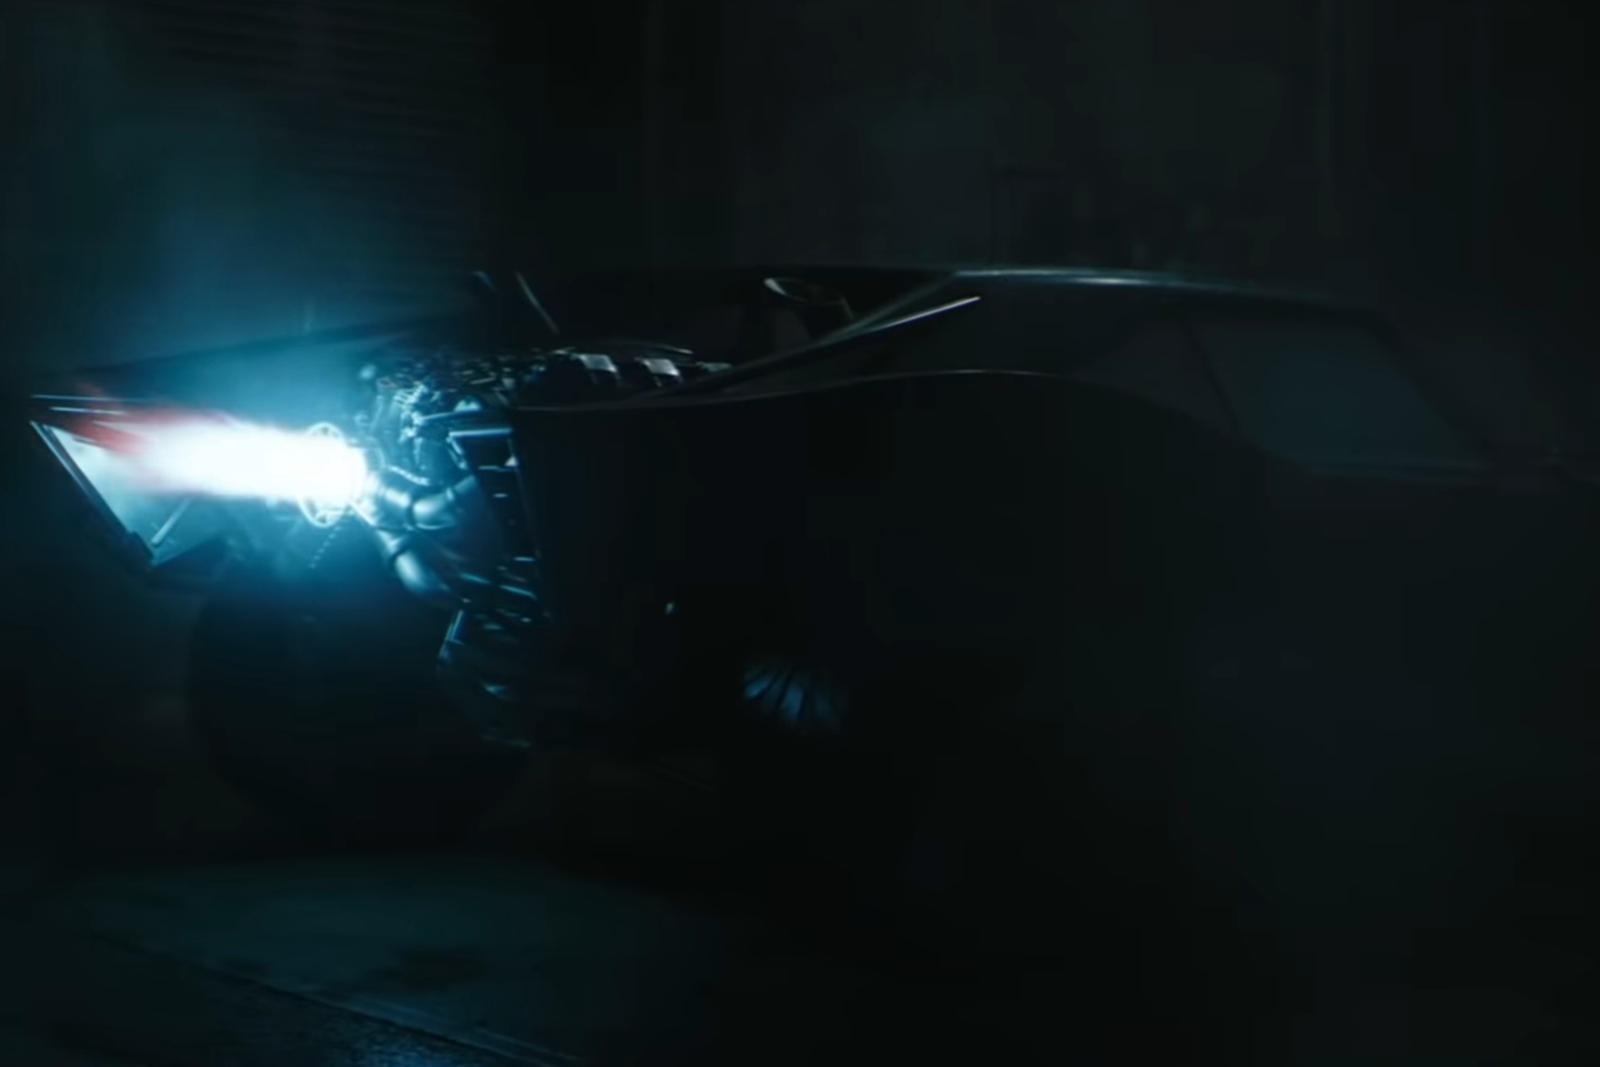 سيارة باتموبيل الجديدة تظهر في إعلان فيلم باتمان القادم 2